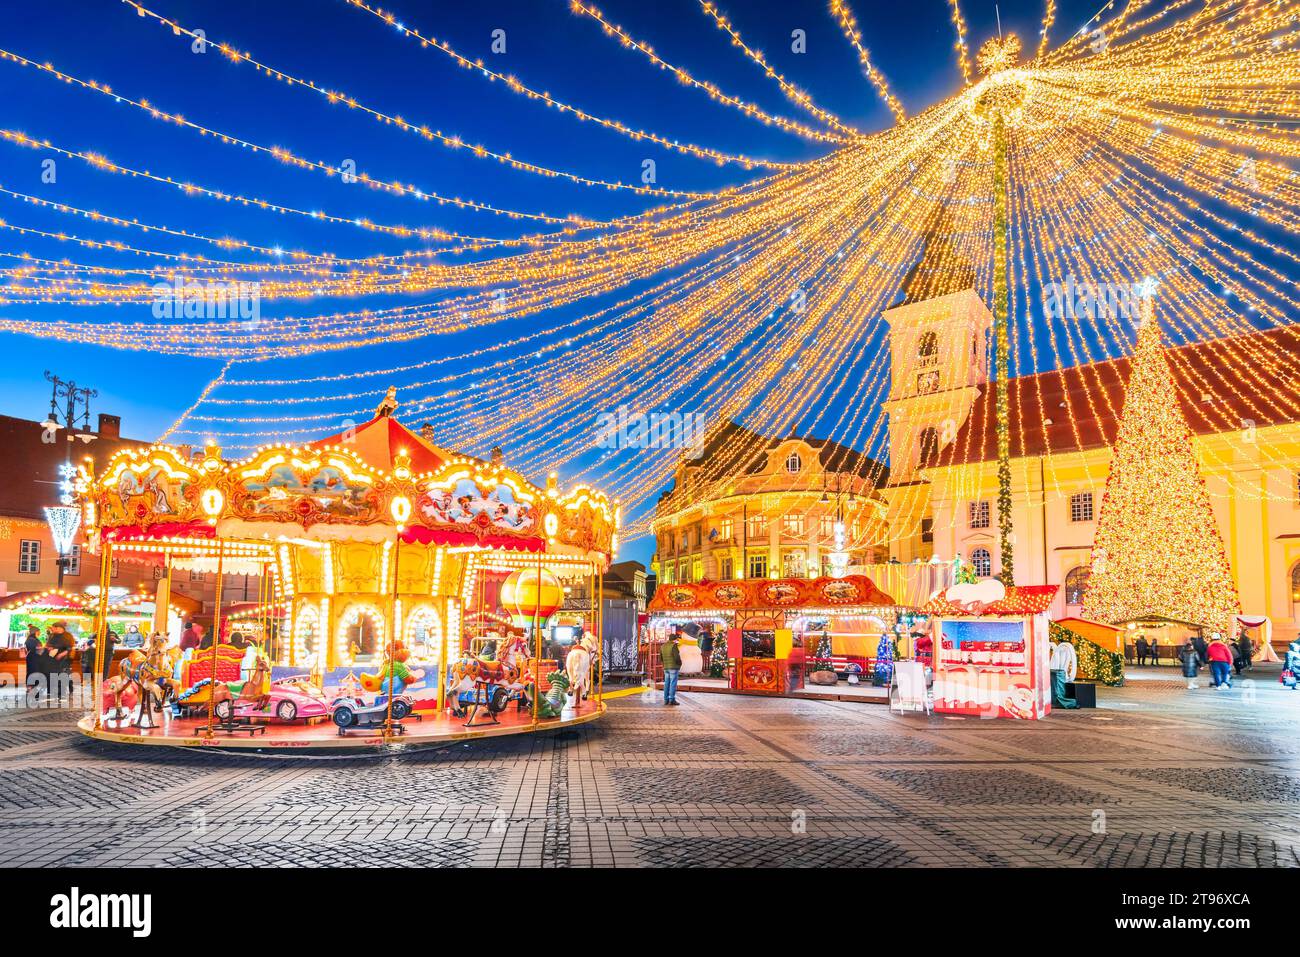 Sibiu, Rumänien. Nachtbild mit Weihnachtsmarkt, mittelalterlicher Innenstadt von Siebenbürgen, berühmter europäischer Weihnachtsmarkt. Stockfoto